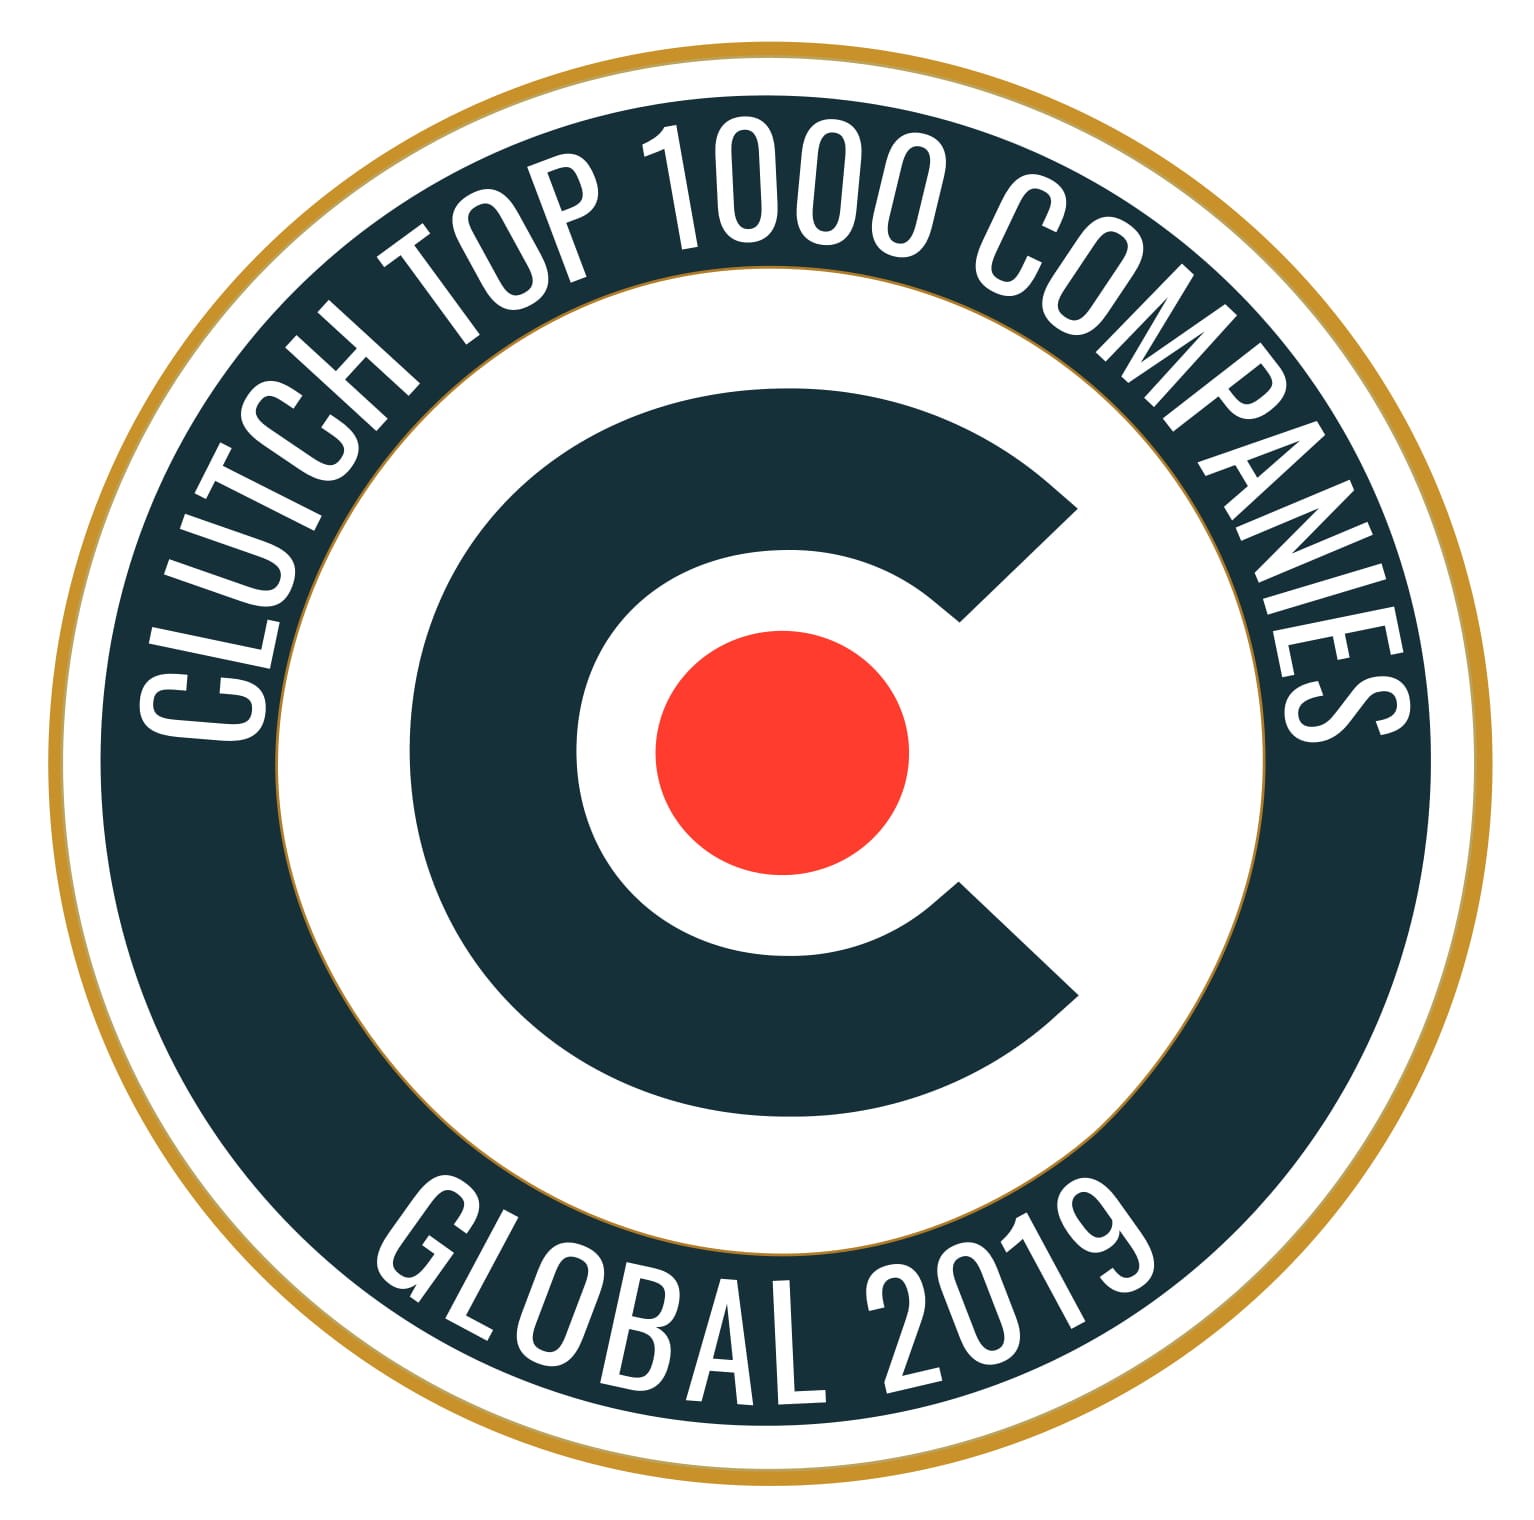 clutch top 1000 2019